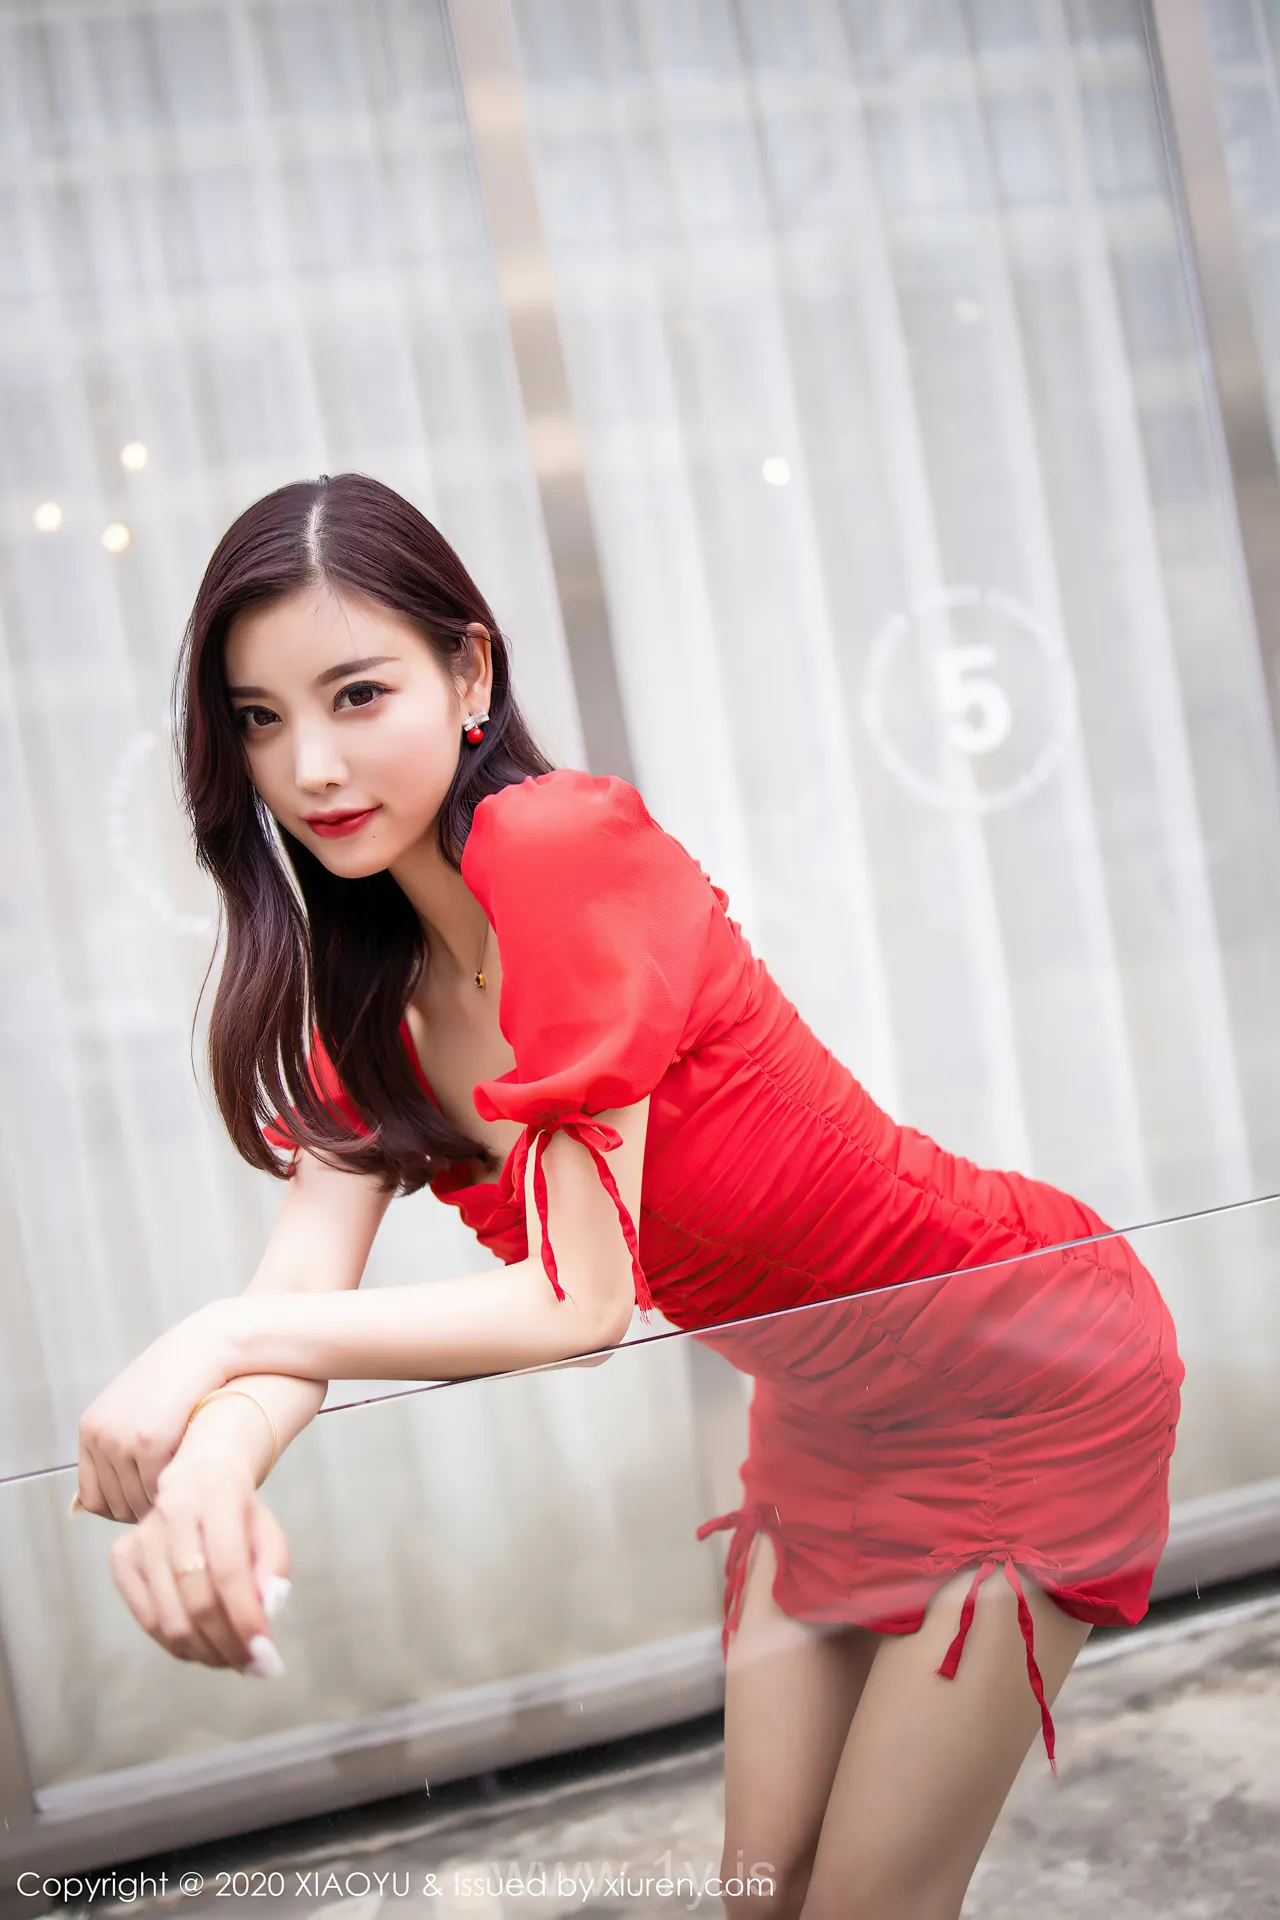 语画界 VOL.326 Pretty & Hot Chinese Model 杨晨晨sugar